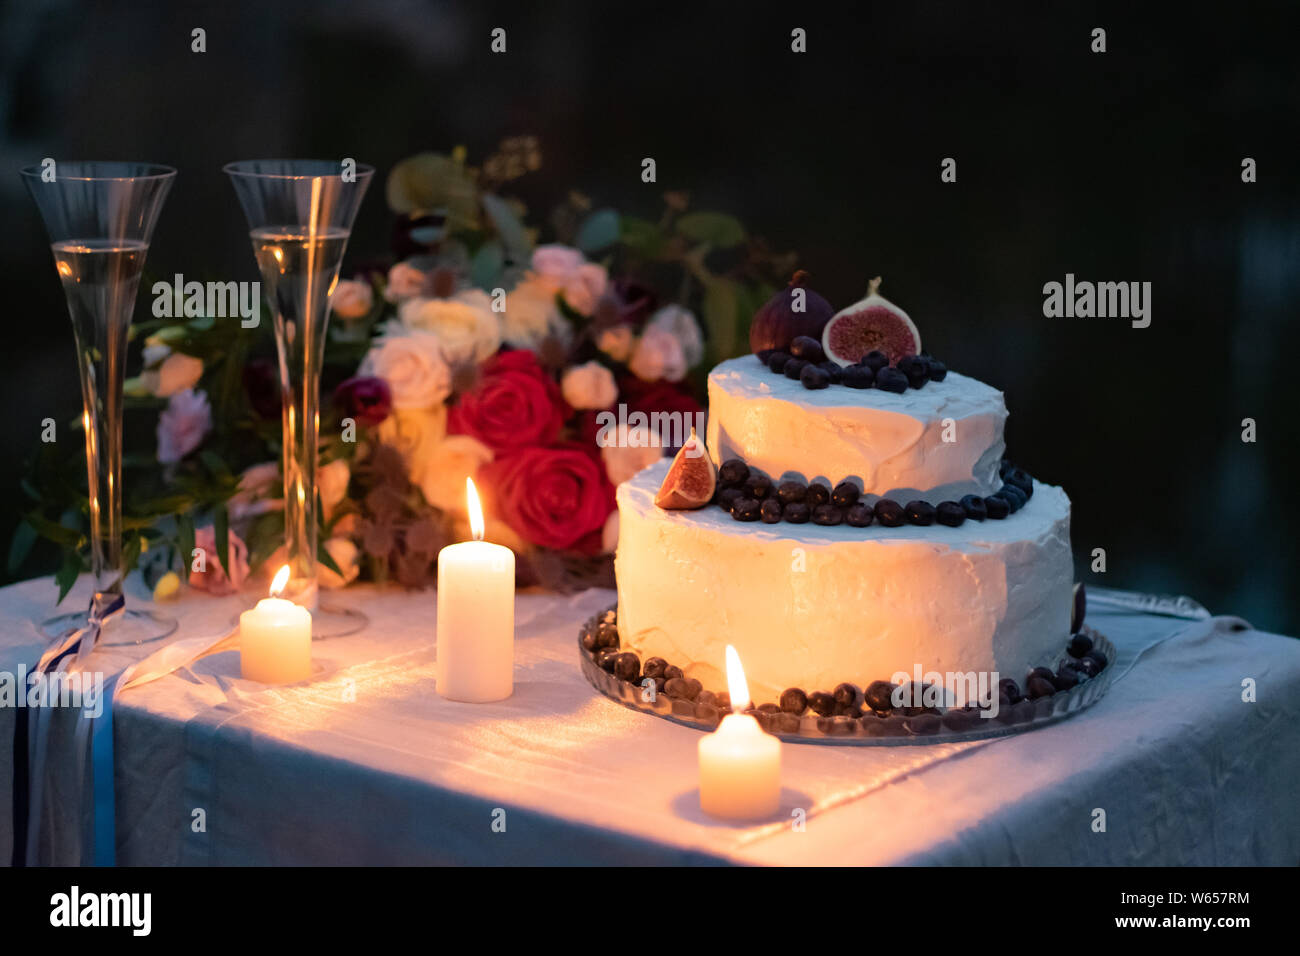 Hochzeit Dekorationen. Kuchen in weiße Glasur mit einer Einrichtung der Blaubeeren und Feigen auf dem Tisch am Abend mit Gläsern, Kerzen und eine Hochzeit bouq Stockfoto